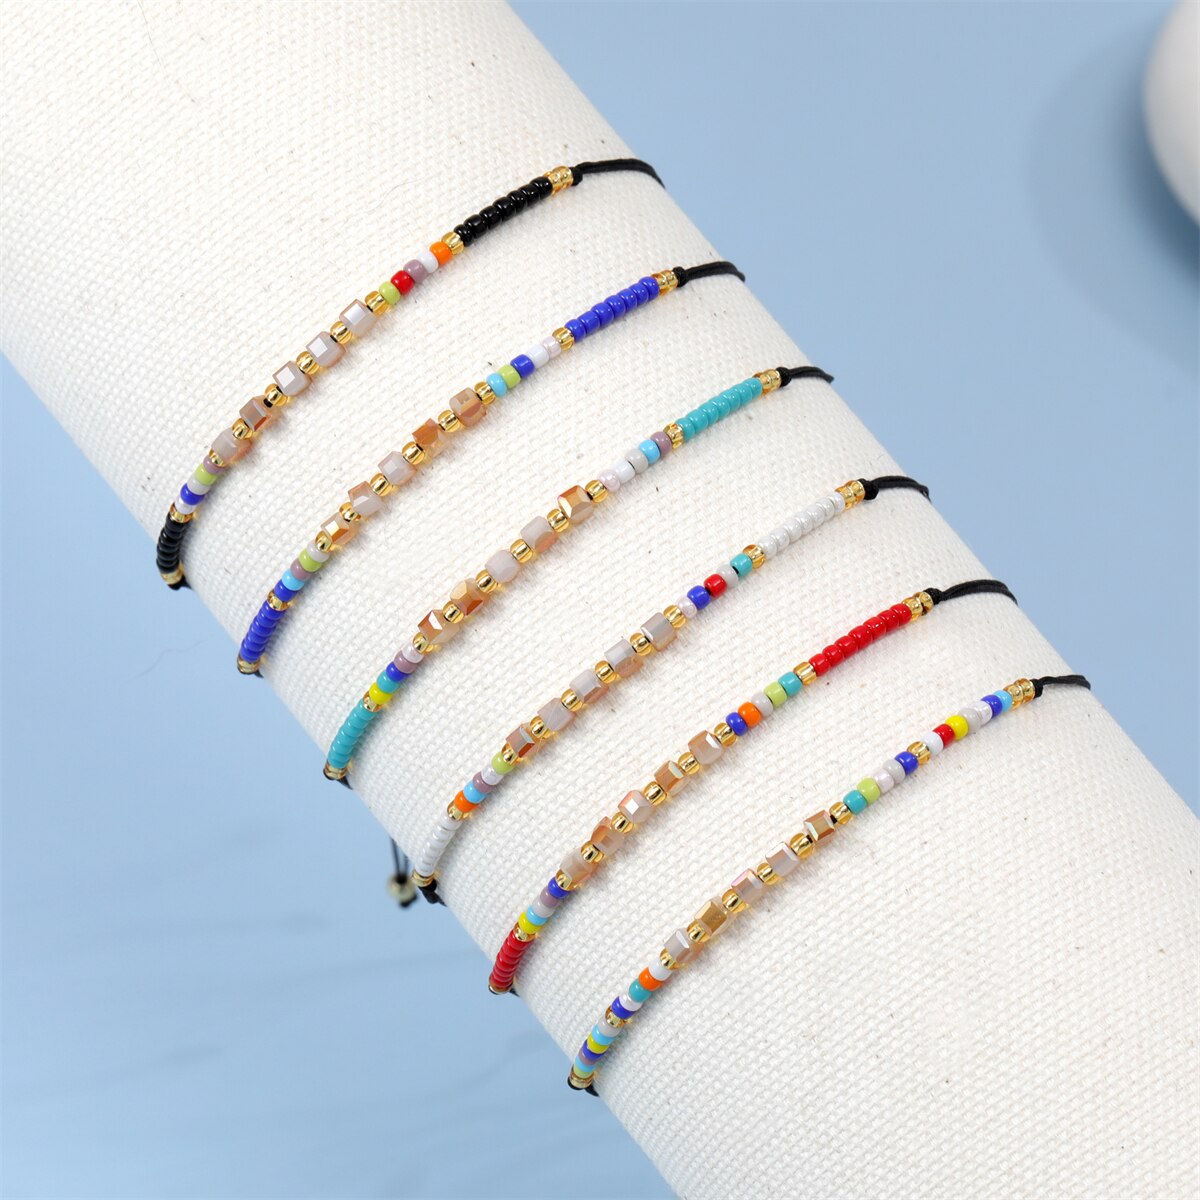 12pcs/lot Boho Woman Handmade Bohemia Weave Adjustable Crystal Seed Beads Rope Chain Charms Bracelets Fashion Jewelry